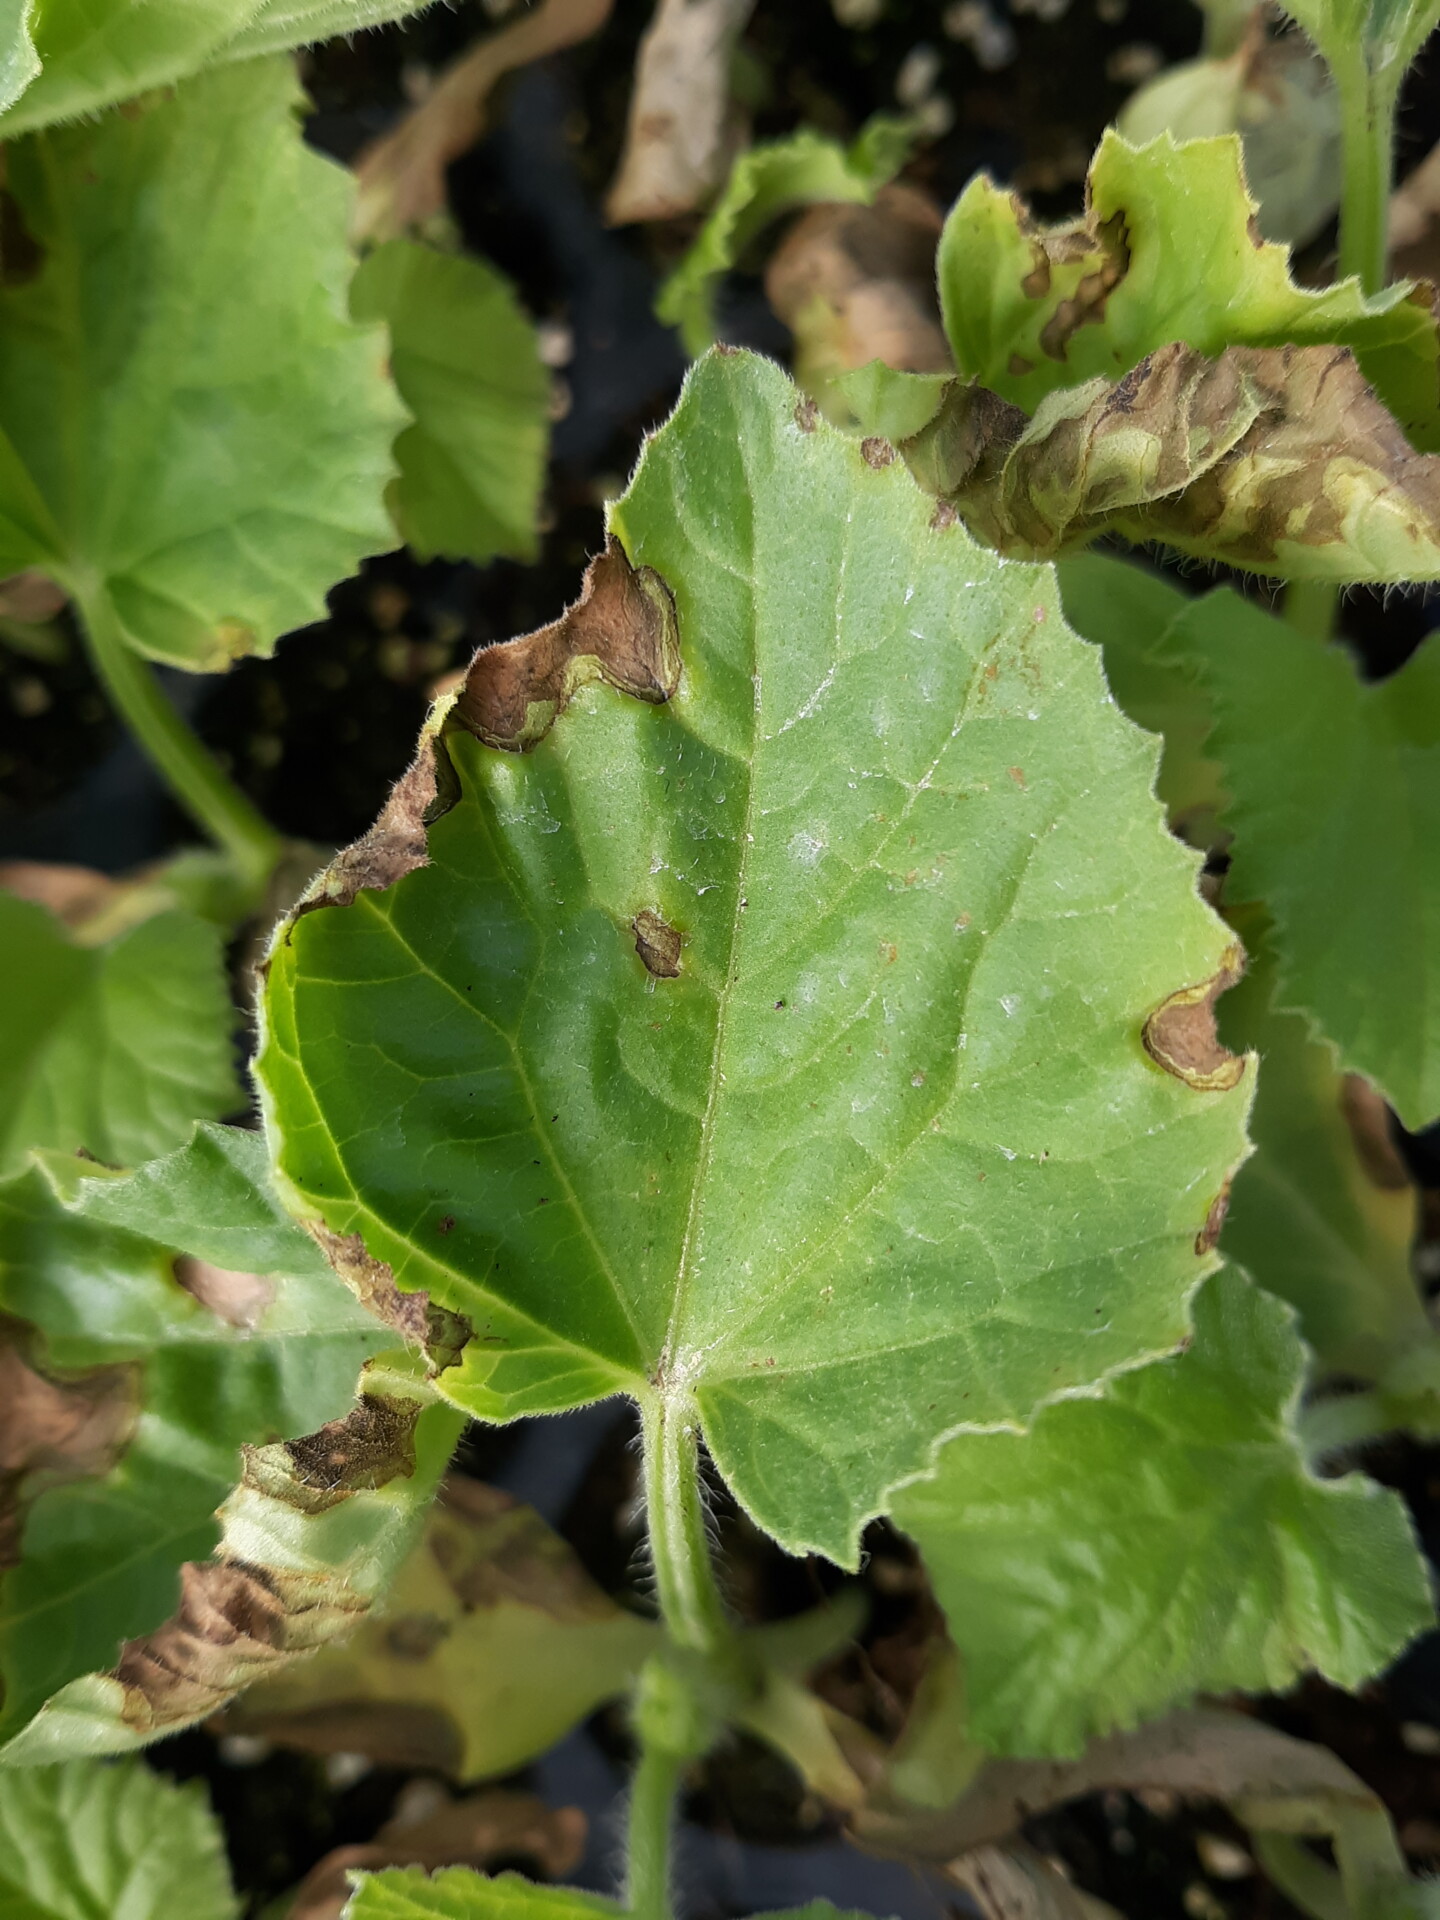 Angular leaf spot of cantaloupe